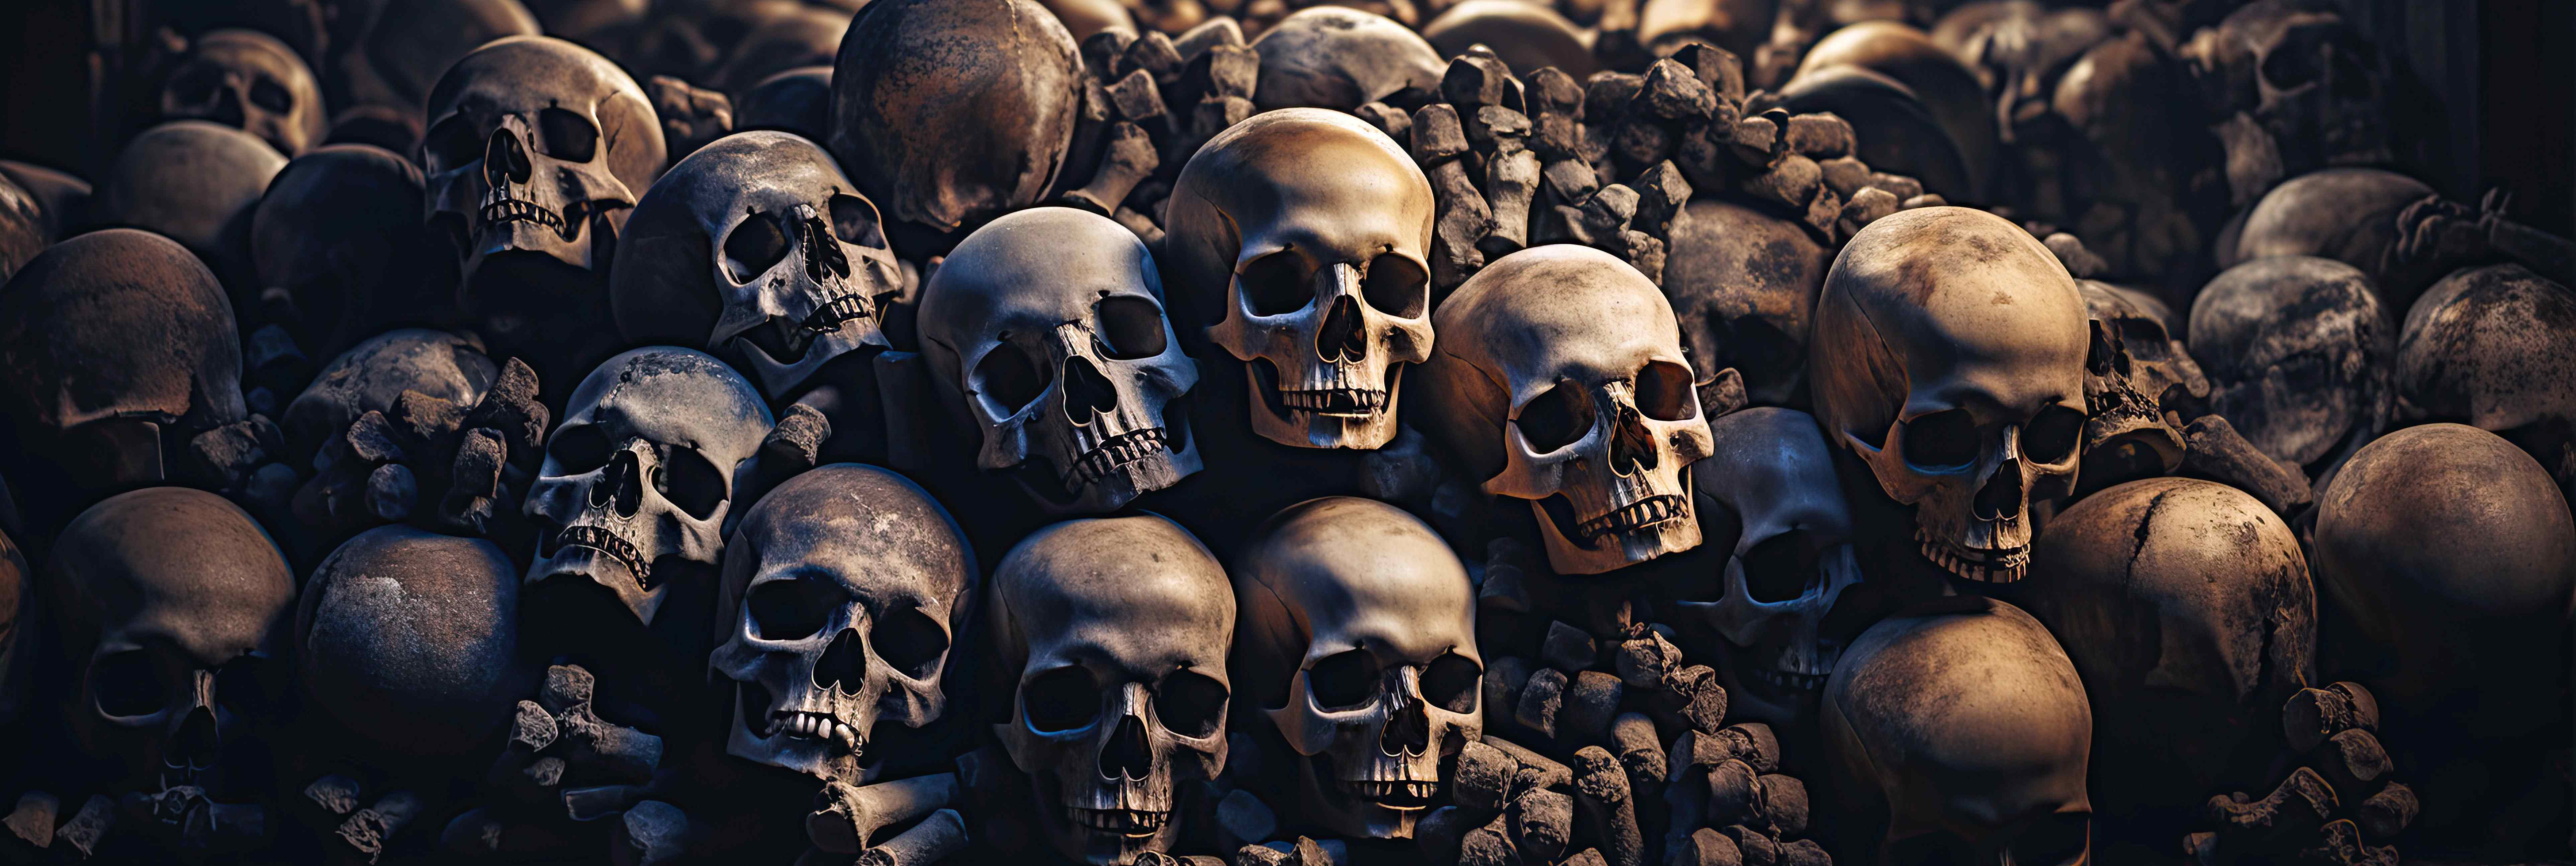 La peste noire de 1349 aurait décimé jusqu'à 60 % de la population européenne. © alexkoral, Adobe Stock